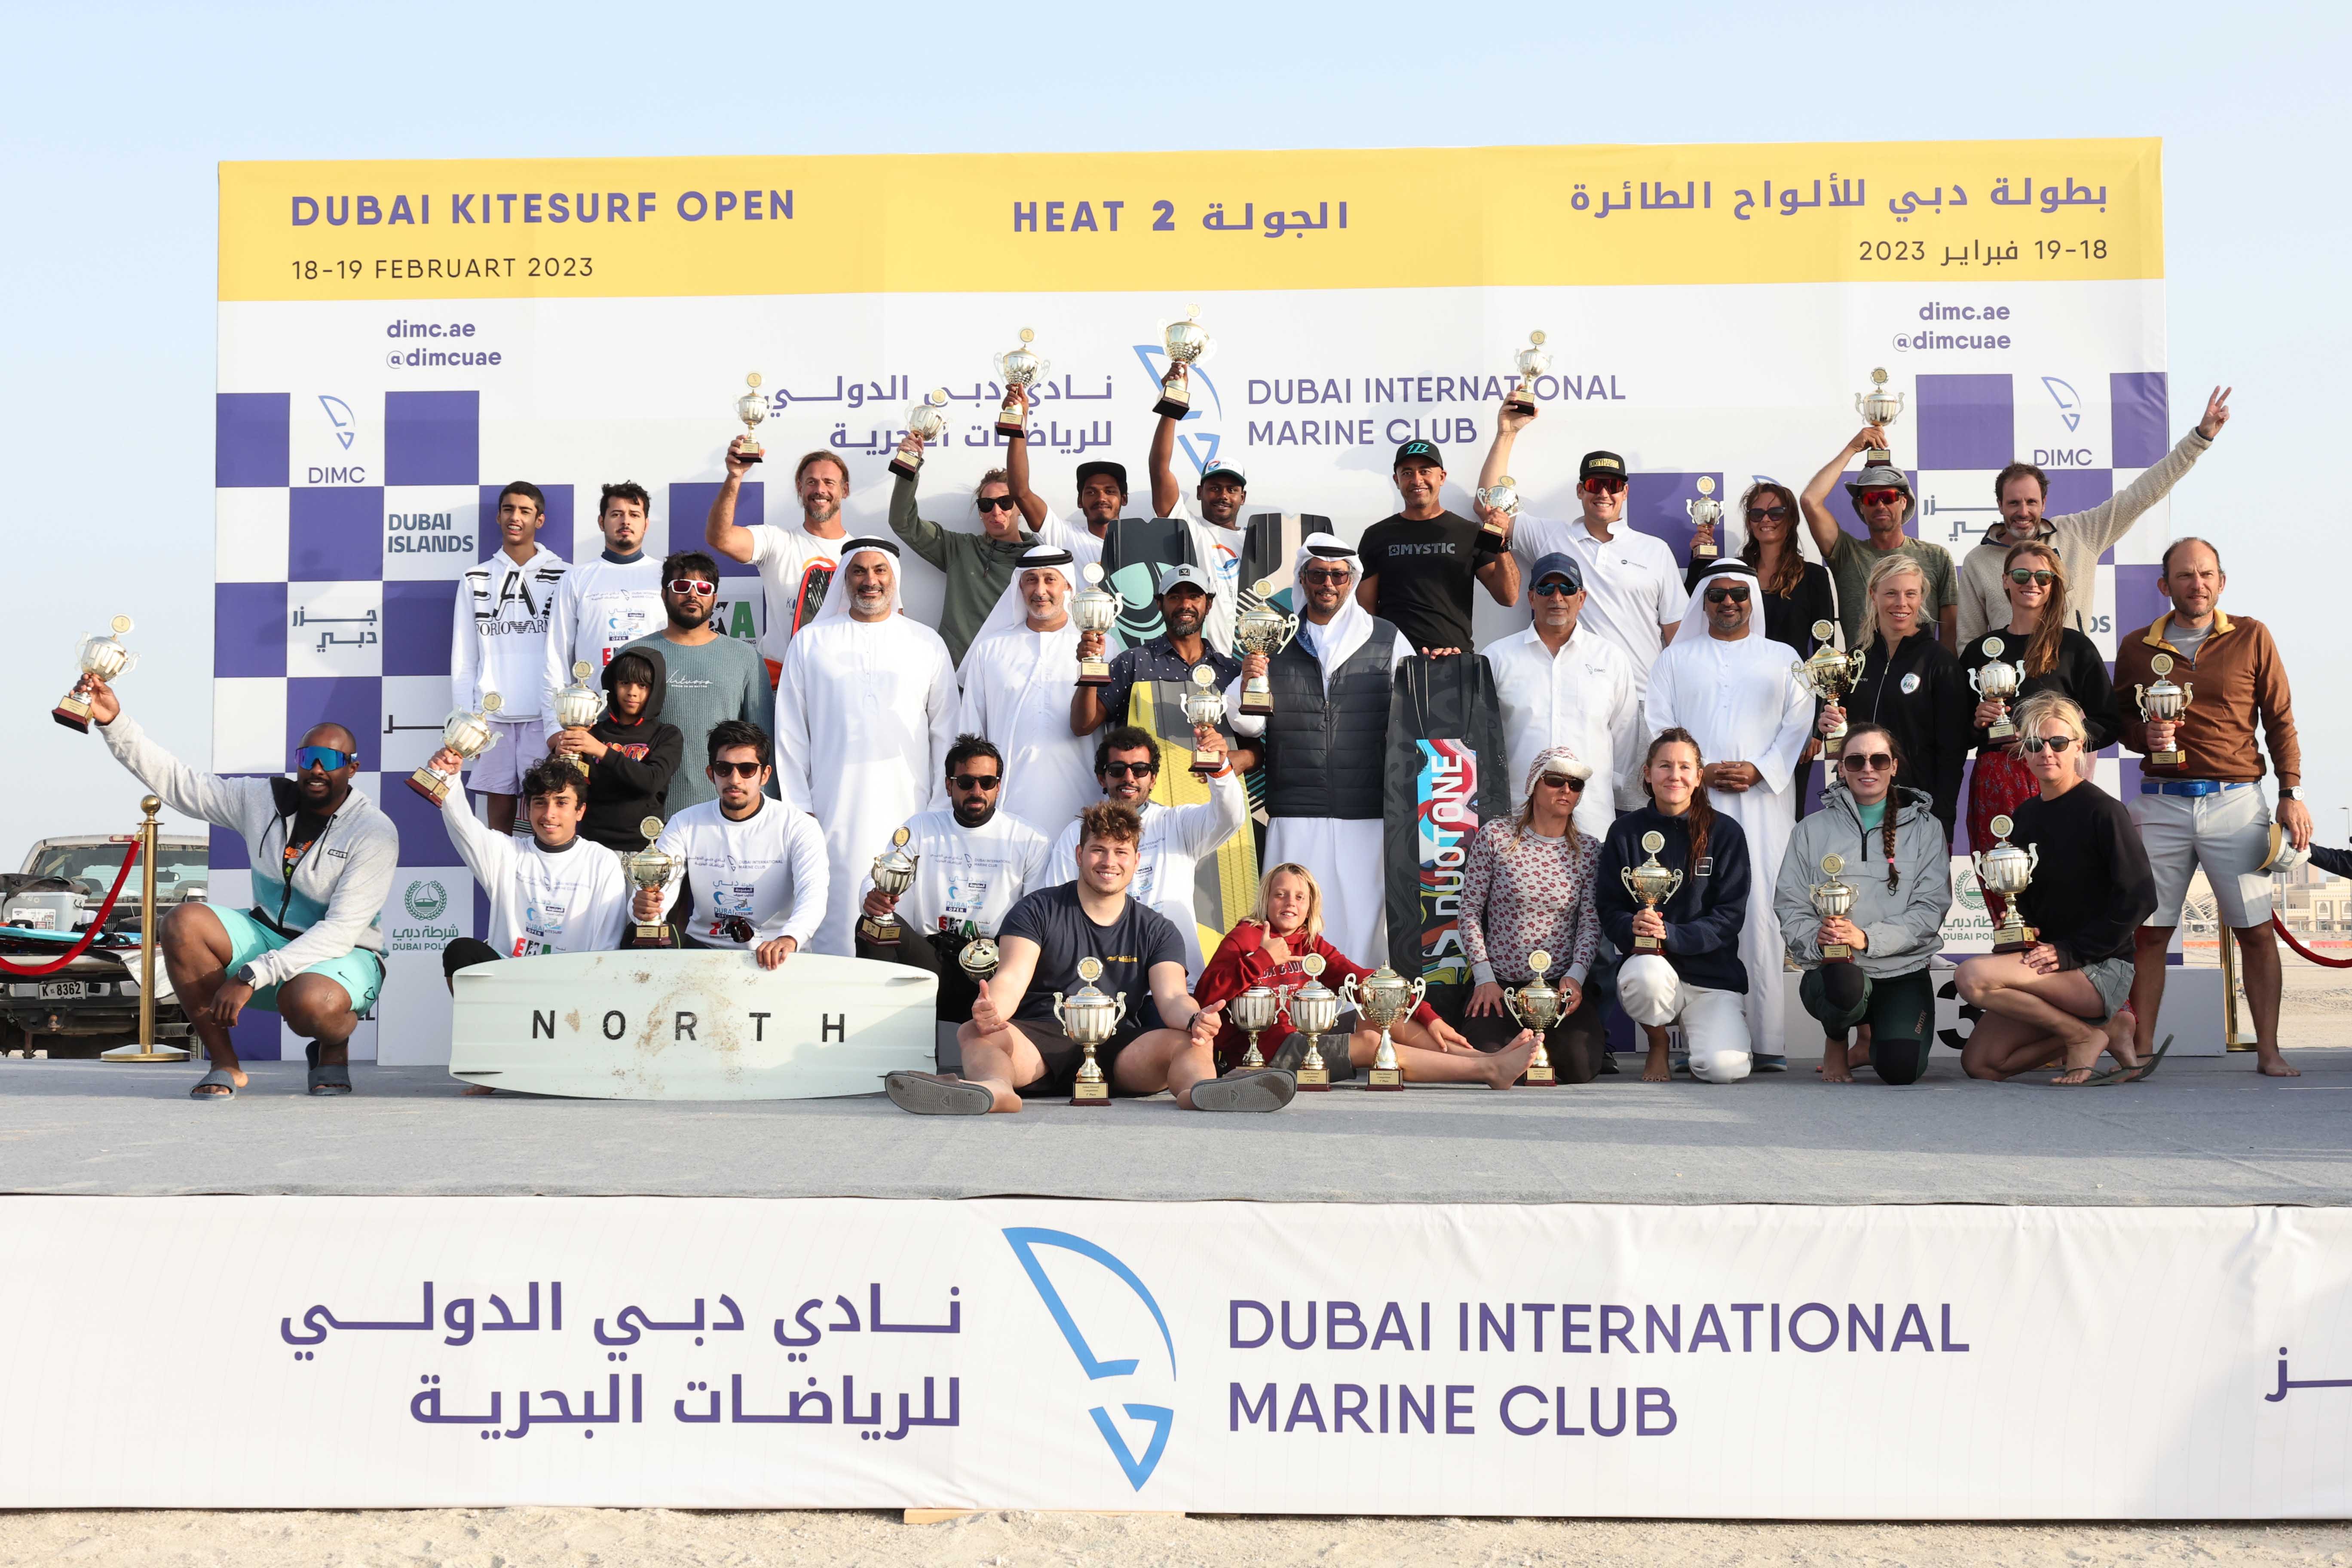 Al Mansoori won two titles at conclusion of Dubai Kitesurf Open